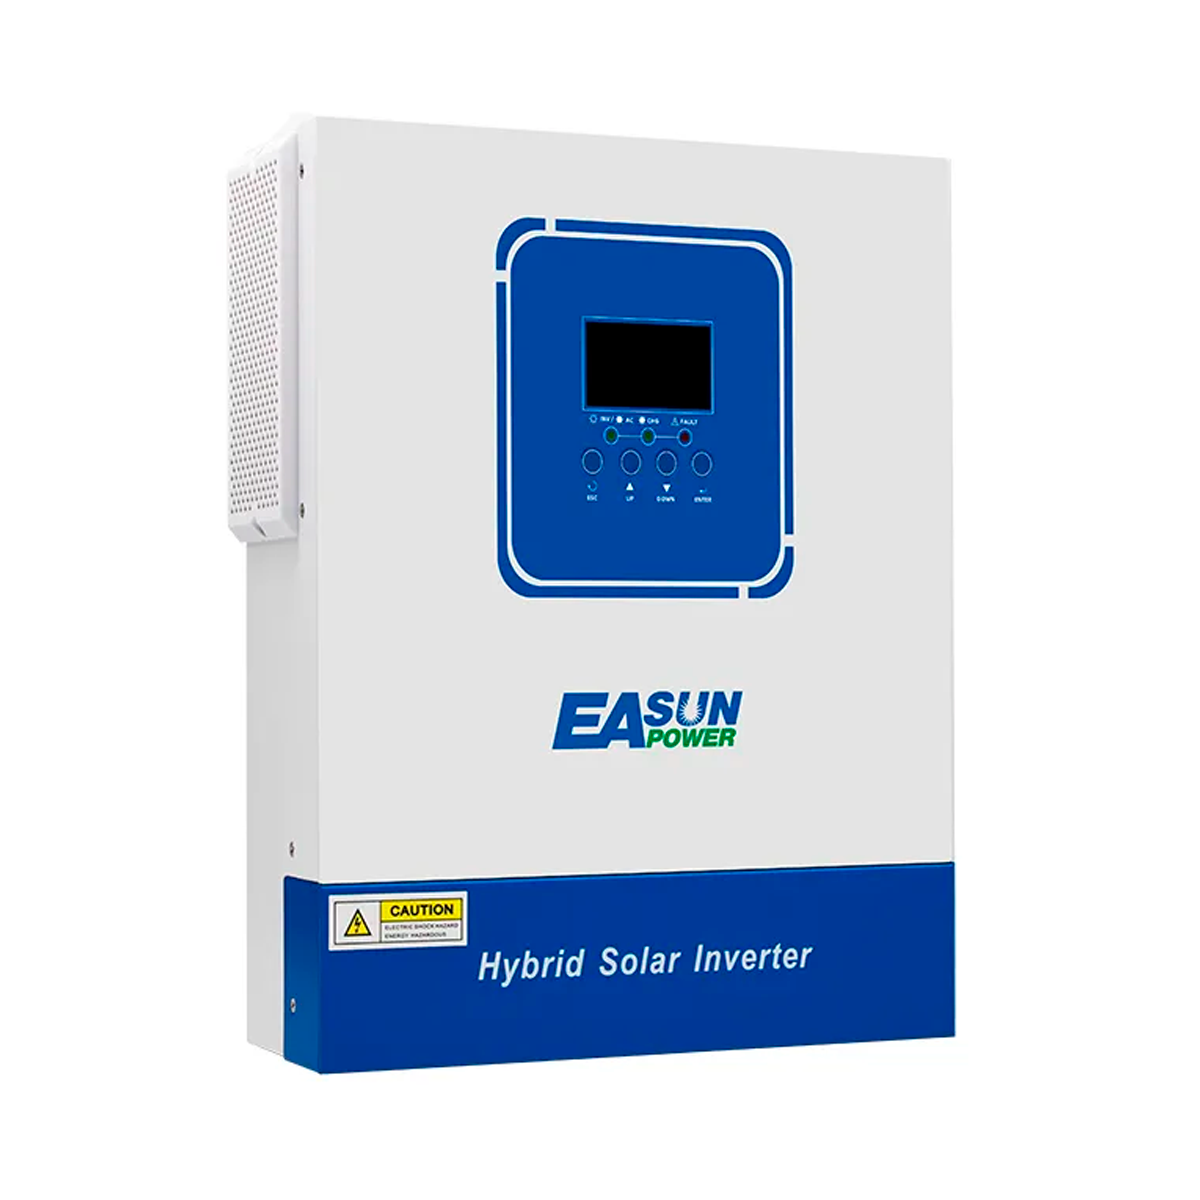 EASUN POWER ISolar-SMG-II-4KW Hybrid Inverter, 24V, 4000W (UPS, Backup Power Supply).